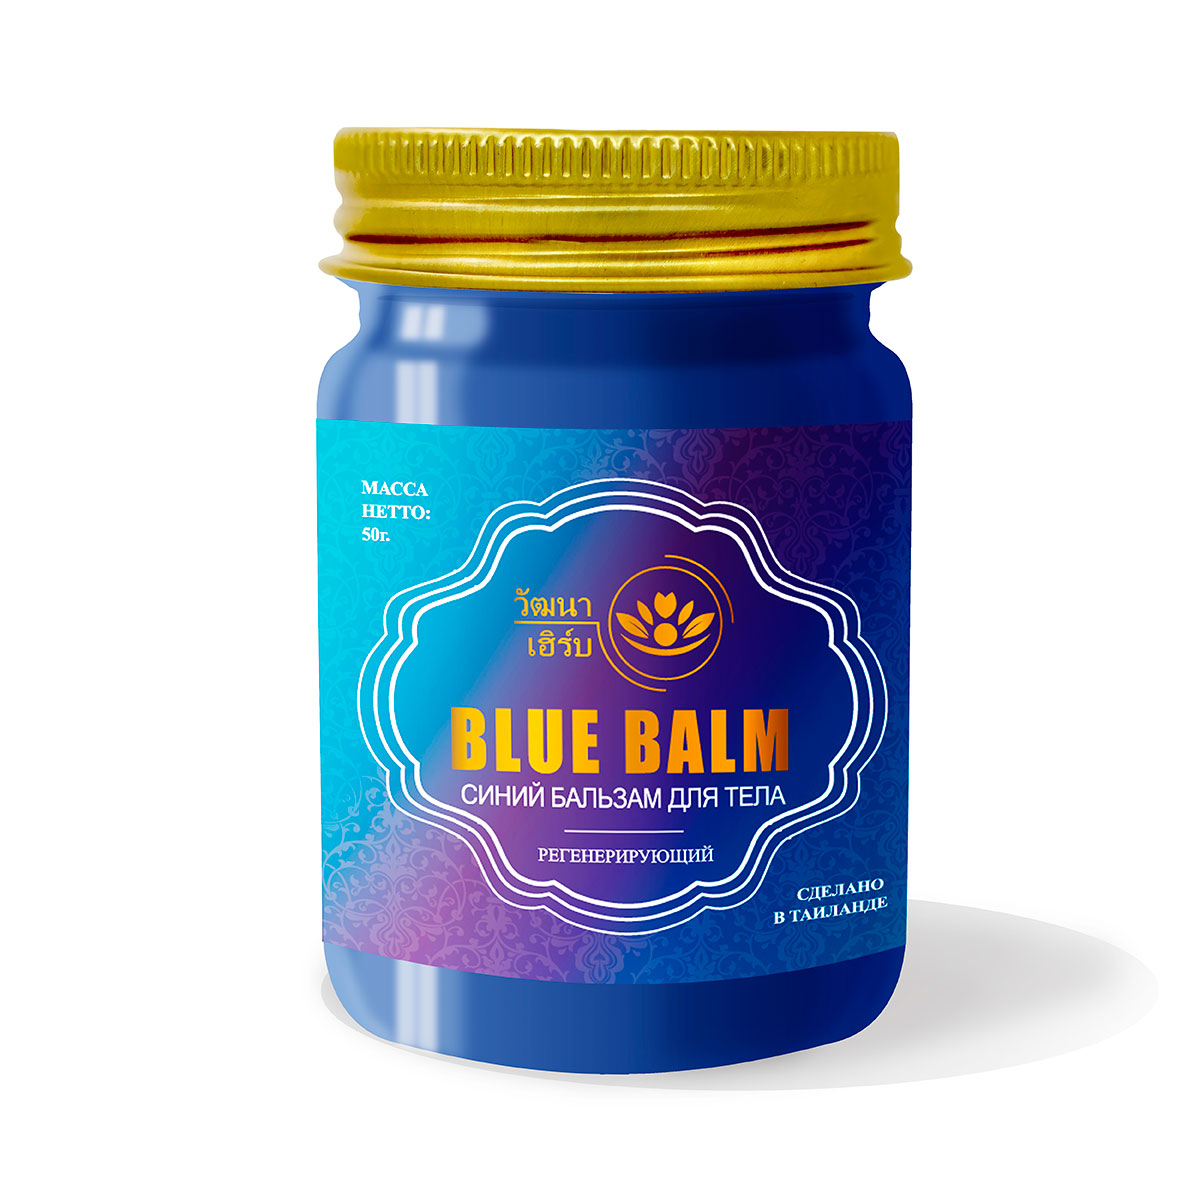 Купить Тайский Синий бальзам для тела регенерирующий Wattana Herb, 50гр.